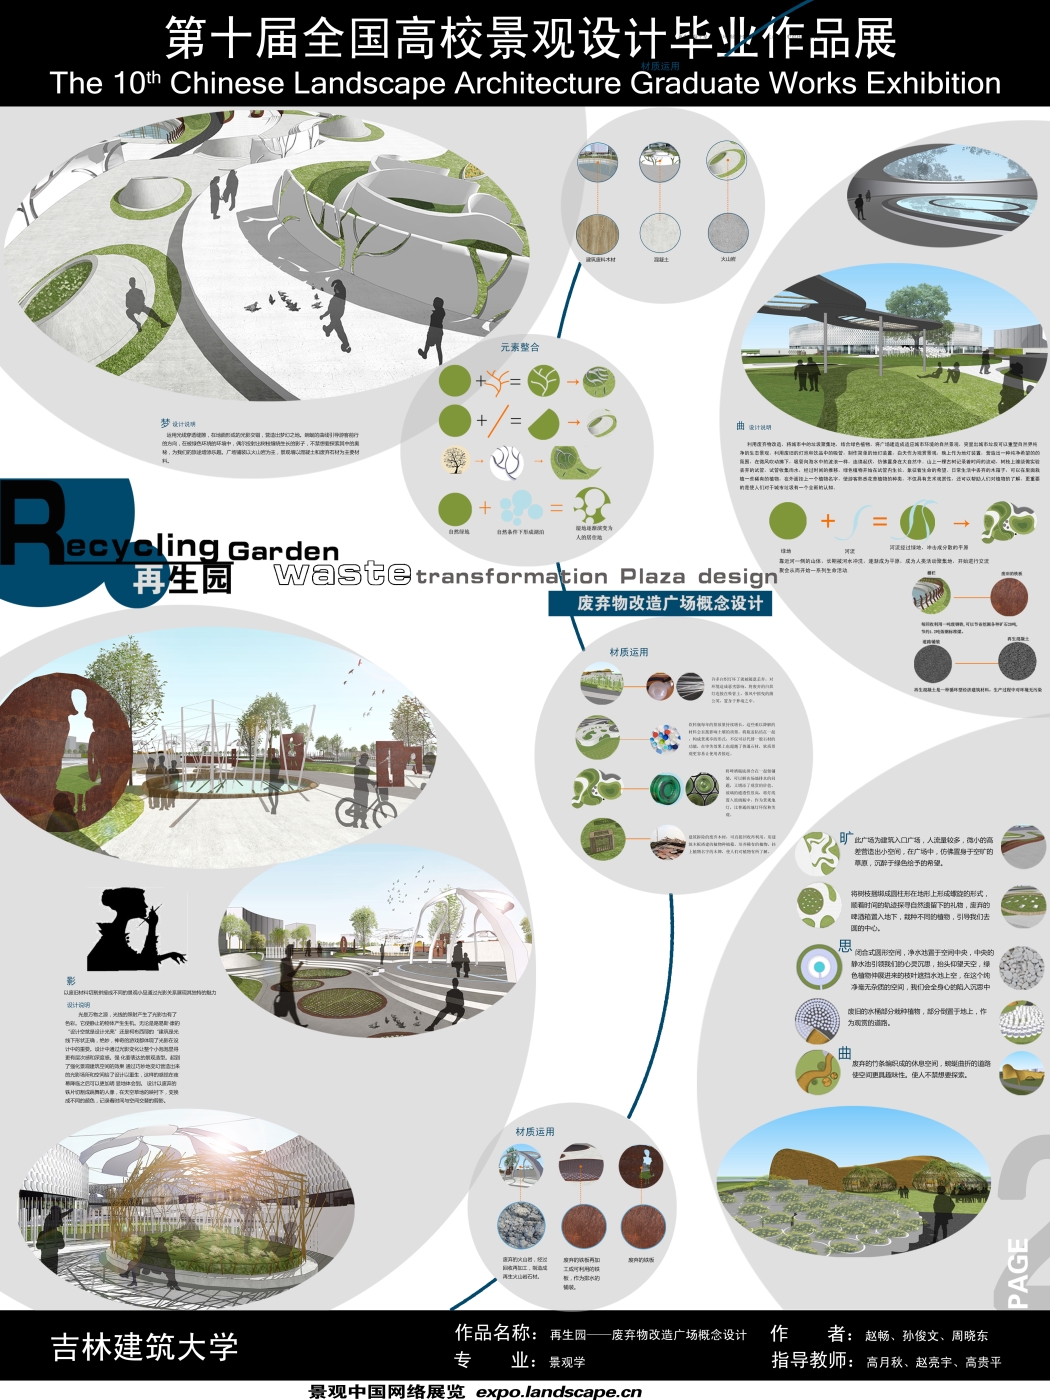 再生园——废弃物改造广场概念设计-2